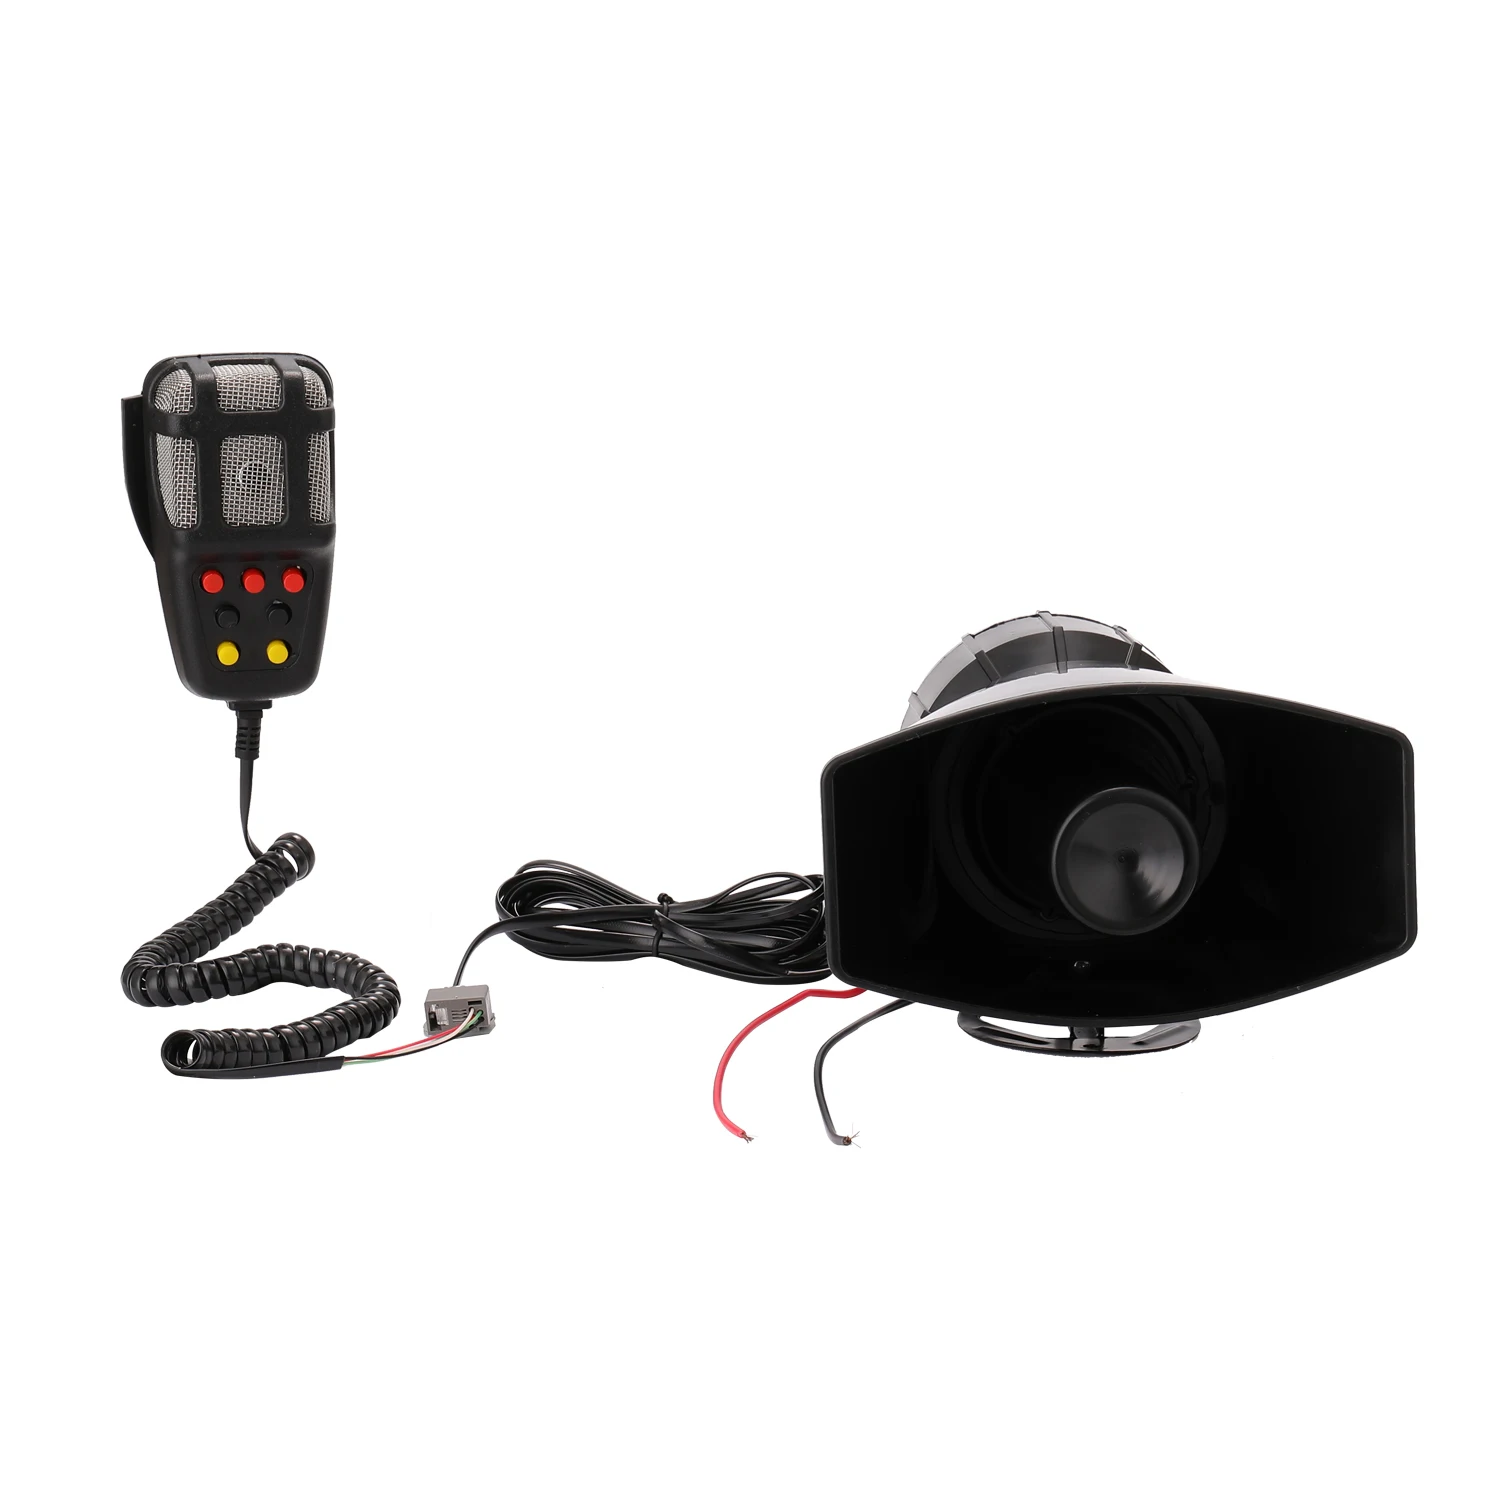 Car Emergency Siren Car Siren Horn Mic PA Speaker System Emergency Amplifier Hooter alarm horn speaker 12V 80W 200dB Supplies